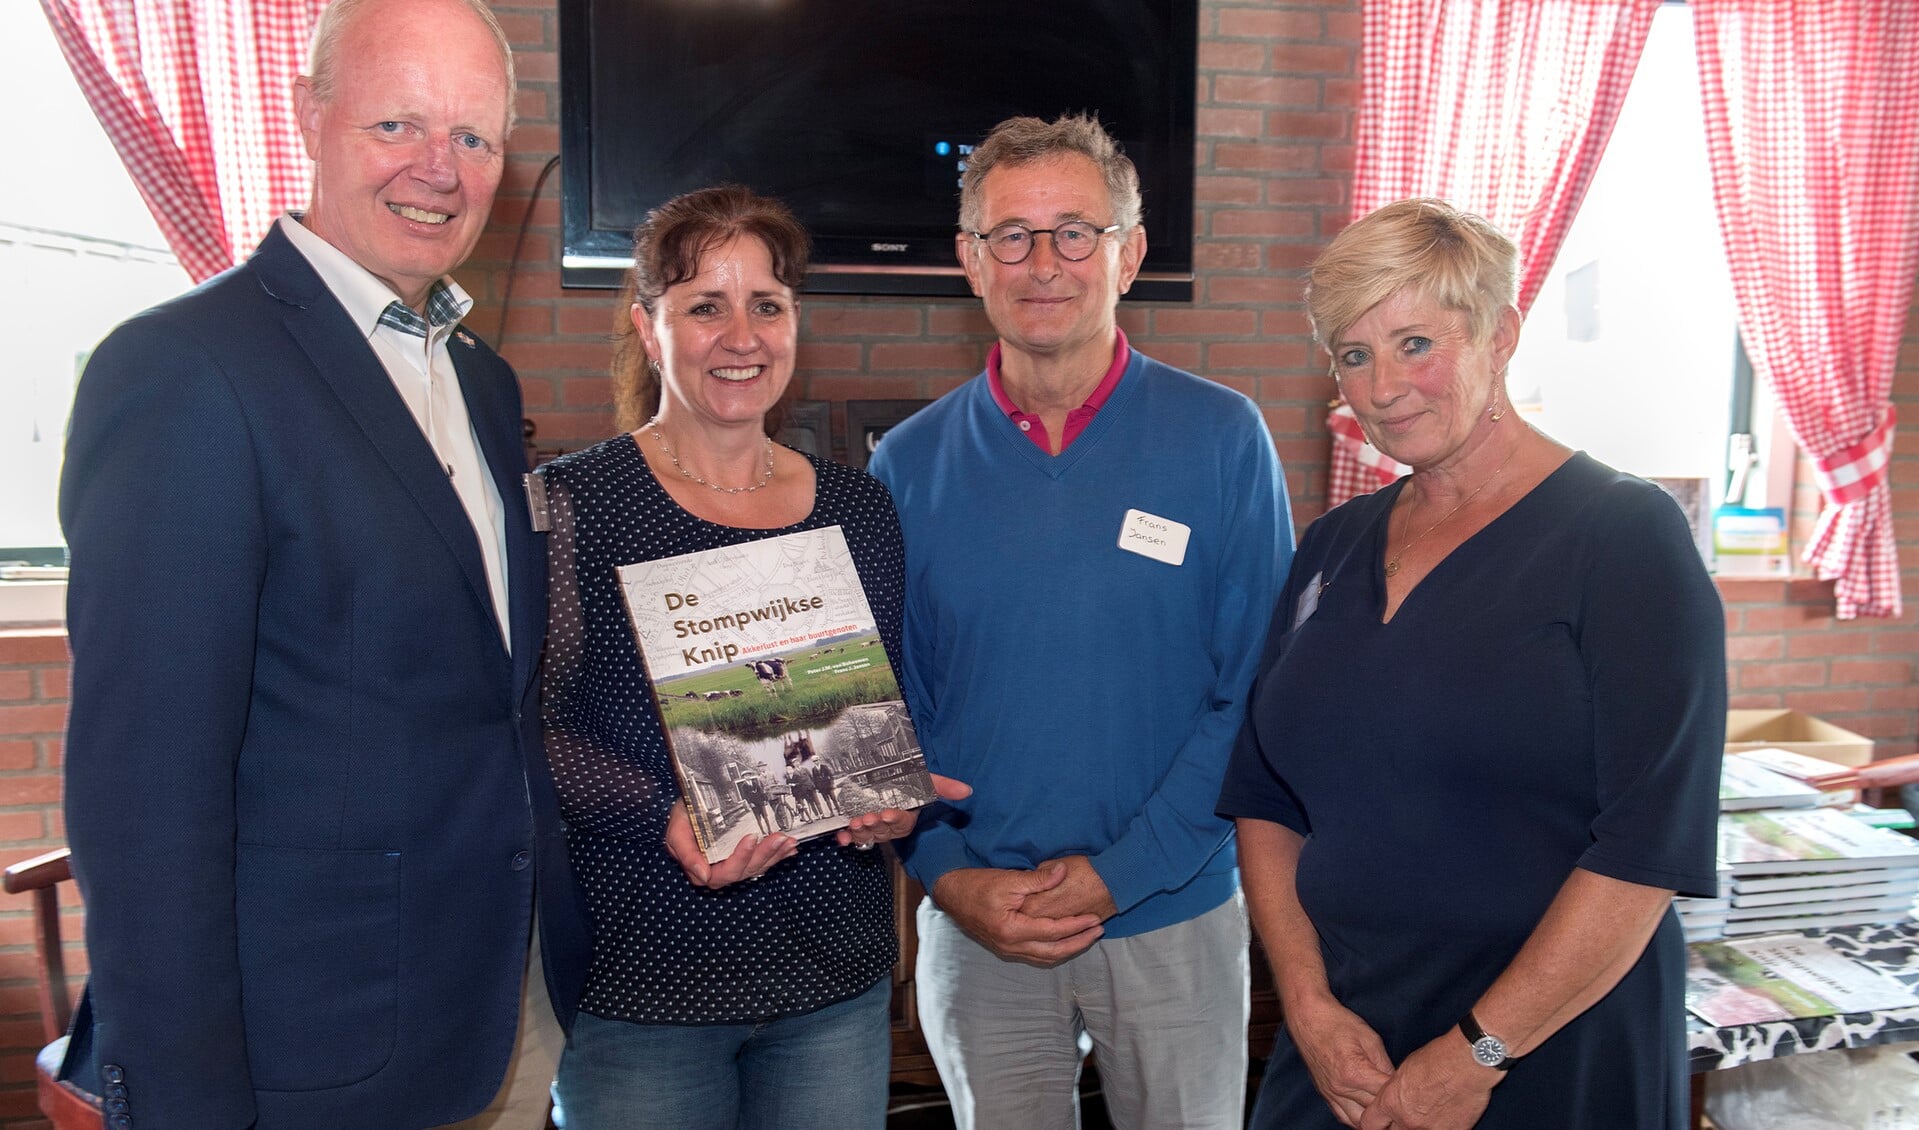 Het feest ging van start met de overhandiging van het boek 'De Stompwijkse Knip' aan wethouder Bianca Bremer (foto: Michel Groen).